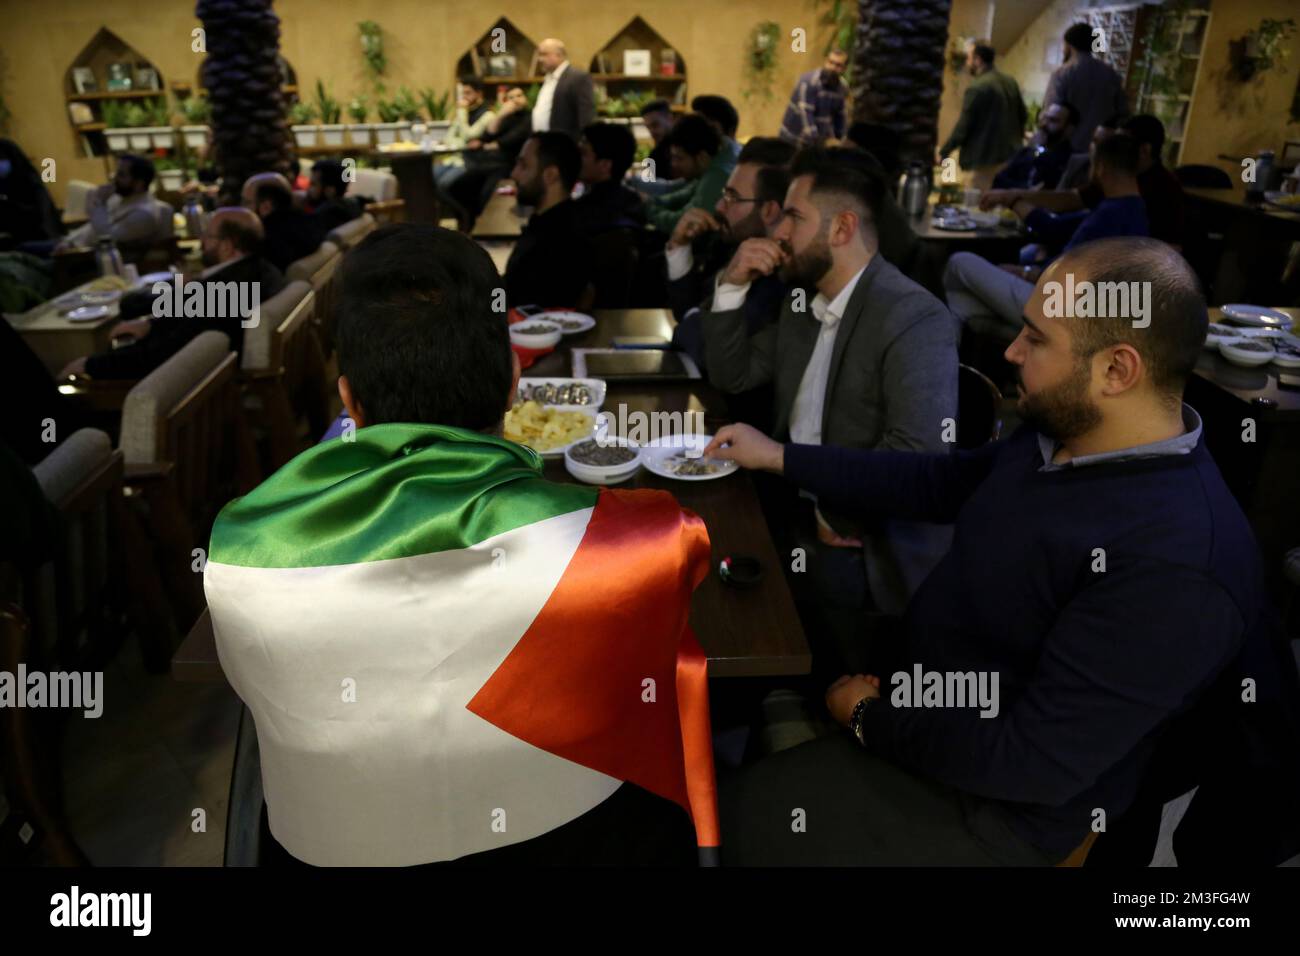 Téhéran, Téhéran, Iran. 14th décembre 2022. Un fan iranien portant un drapeau palestinien tout en assistant au café Nakhlestan dans le centre-ville de Téhéran pour avoir regardé la demi-finale du match de la coupe du monde de la FIFA, Qatar 2022 entre la France et le Maroc sur l'écran, 14 décembre 2022. Les fans d'Iran, du Liban, du Yémen, de Syrie et de Palestine se rassemblent au café de Nakhlestan, qui est géré et détenu par l'organisation artistique et médiatique Owj (IRGS) du corps des Gardiens de la révolution islamique, pour soutenir l'équipe nationale marocaine. Après la victoire contre le Portugal au Qatar sur 10 décembre, les Marocains ont porté des drapeaux palestiniens pour montrer leur suppo Banque D'Images